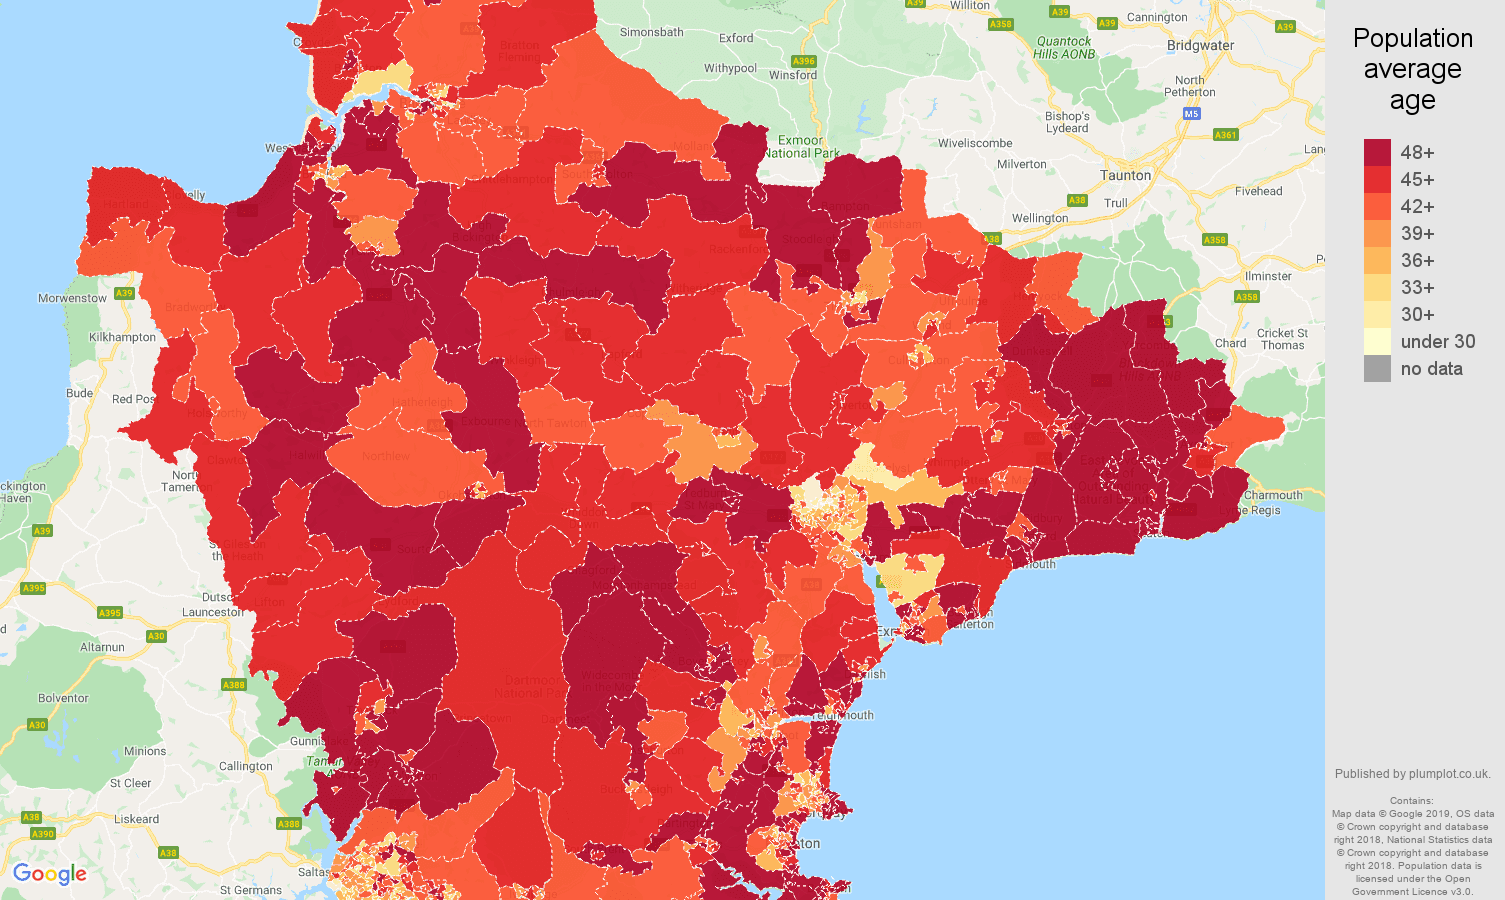 Devon population average age map